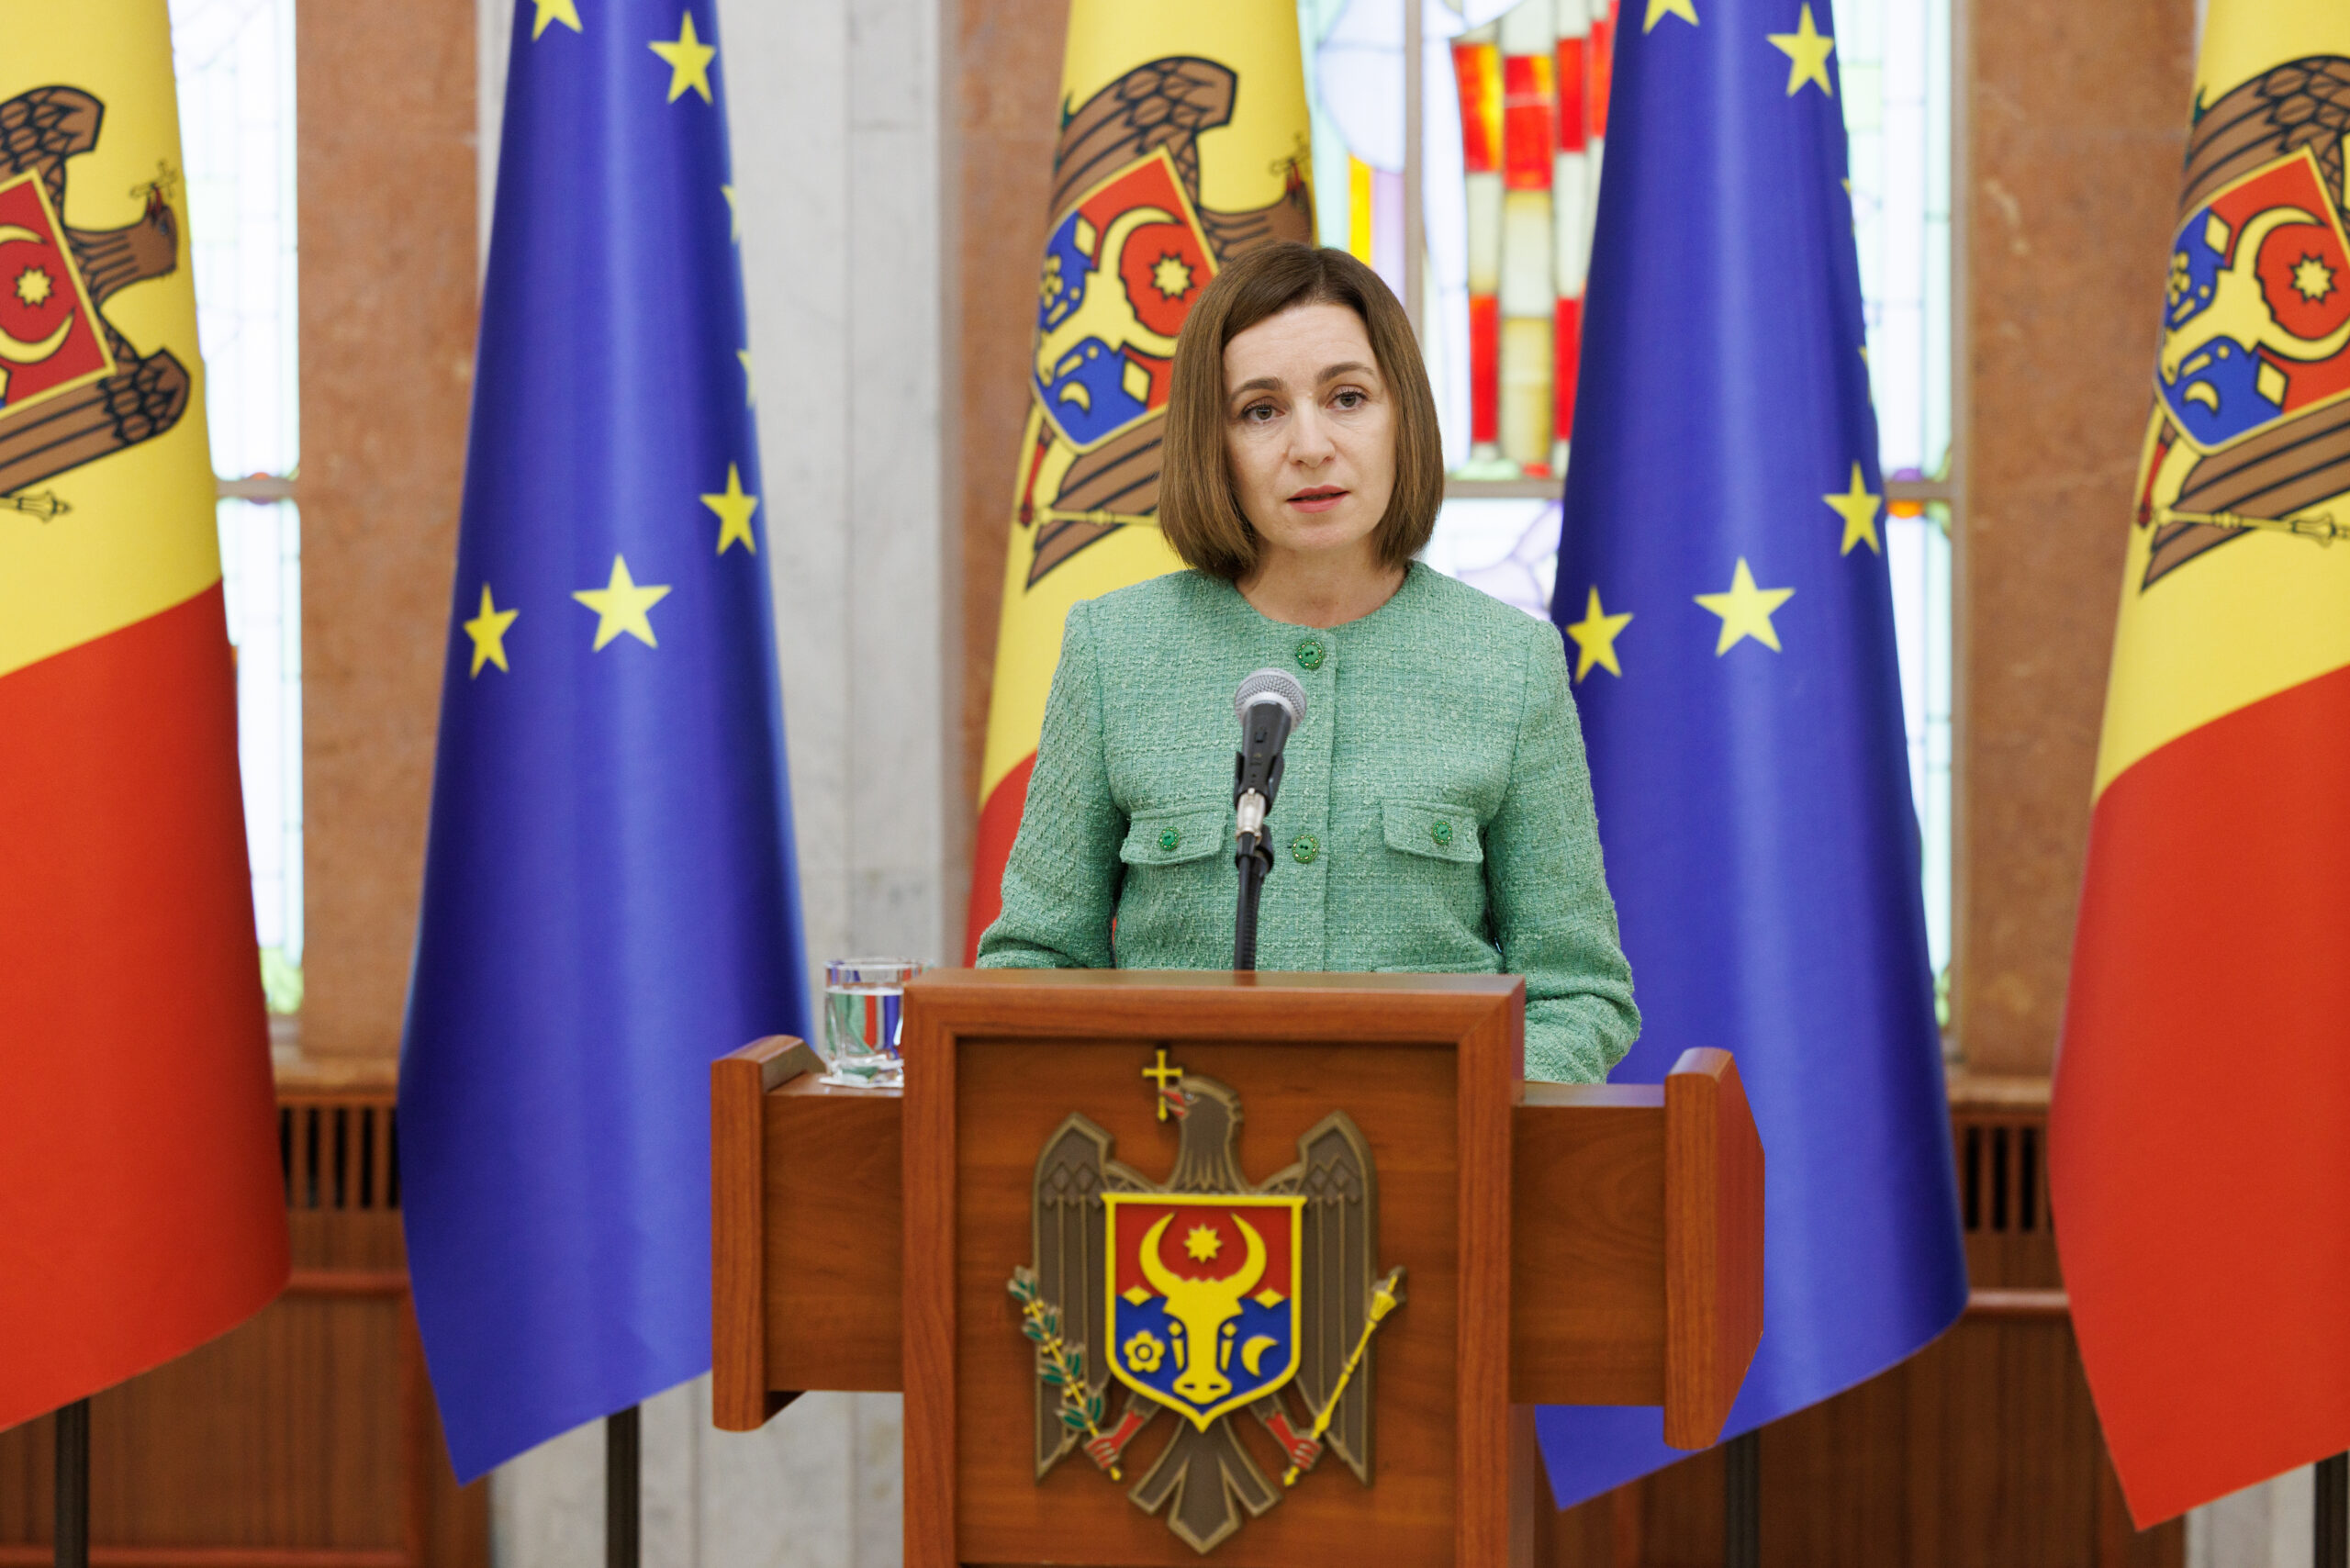 Молдова оголосила Стратегію нацбезпеки